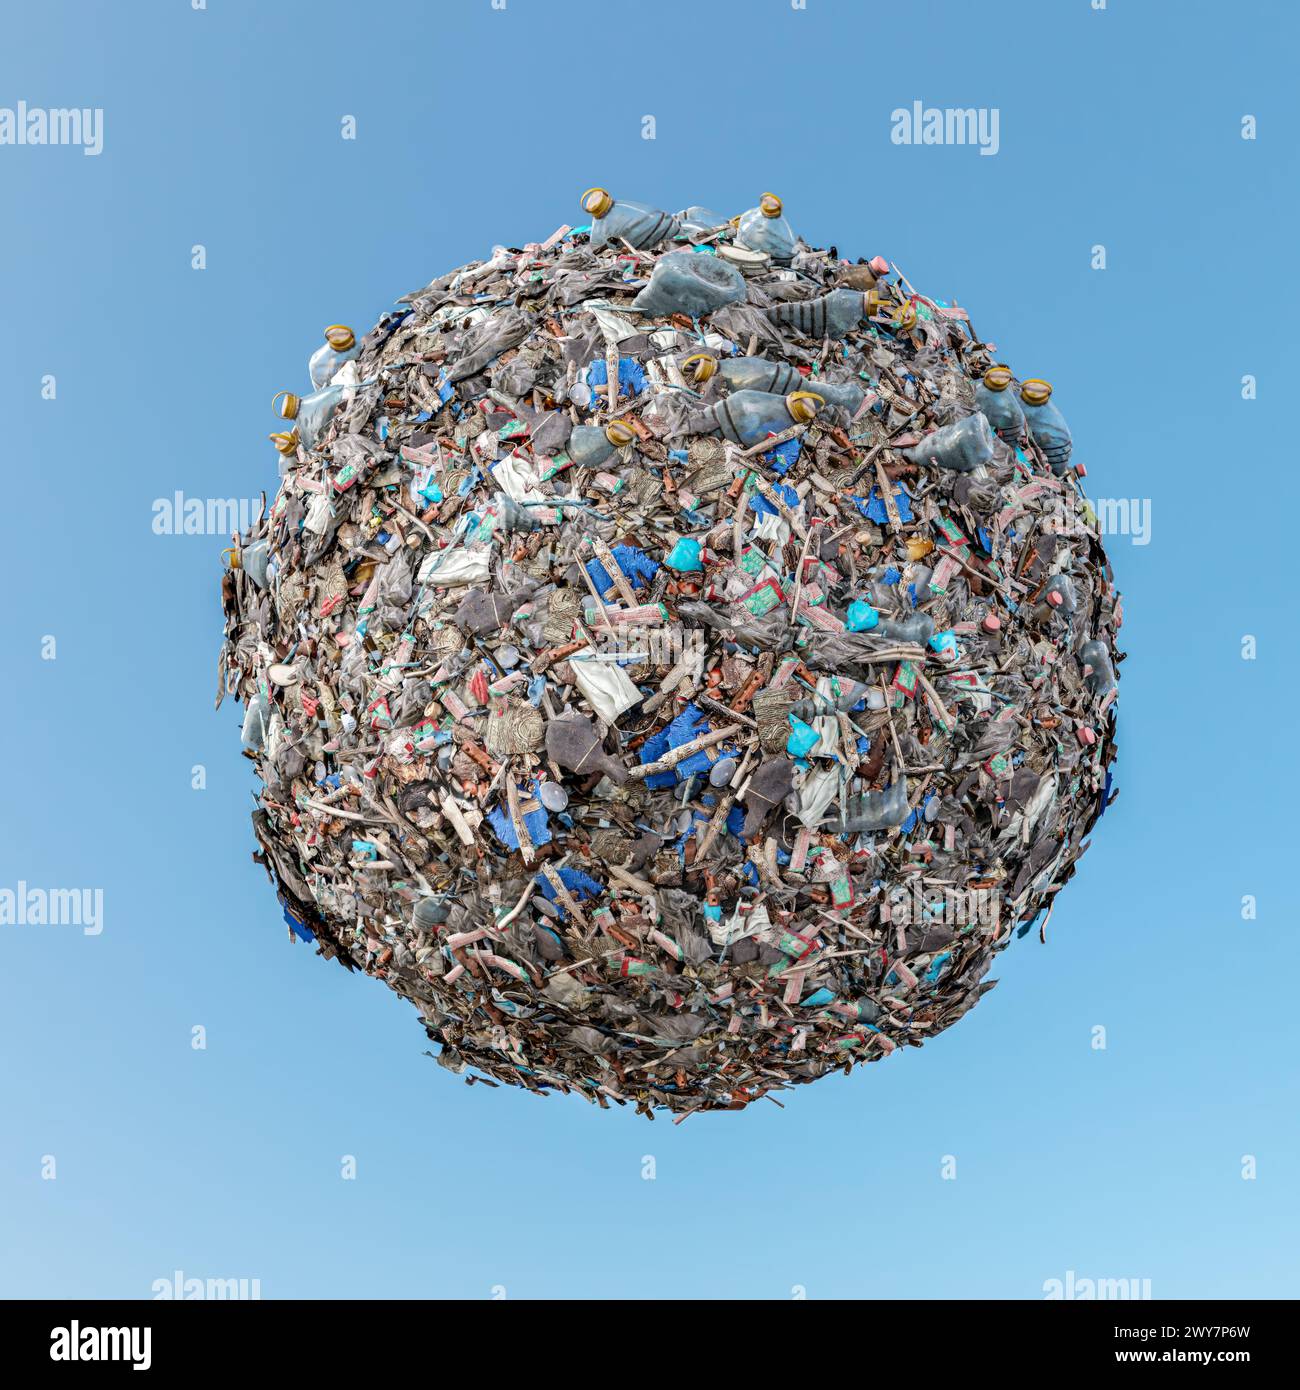 Rendu 3D de la petite planète complètement recouverte de déchets et de débris au-dessus du ciel bleu Banque D'Images